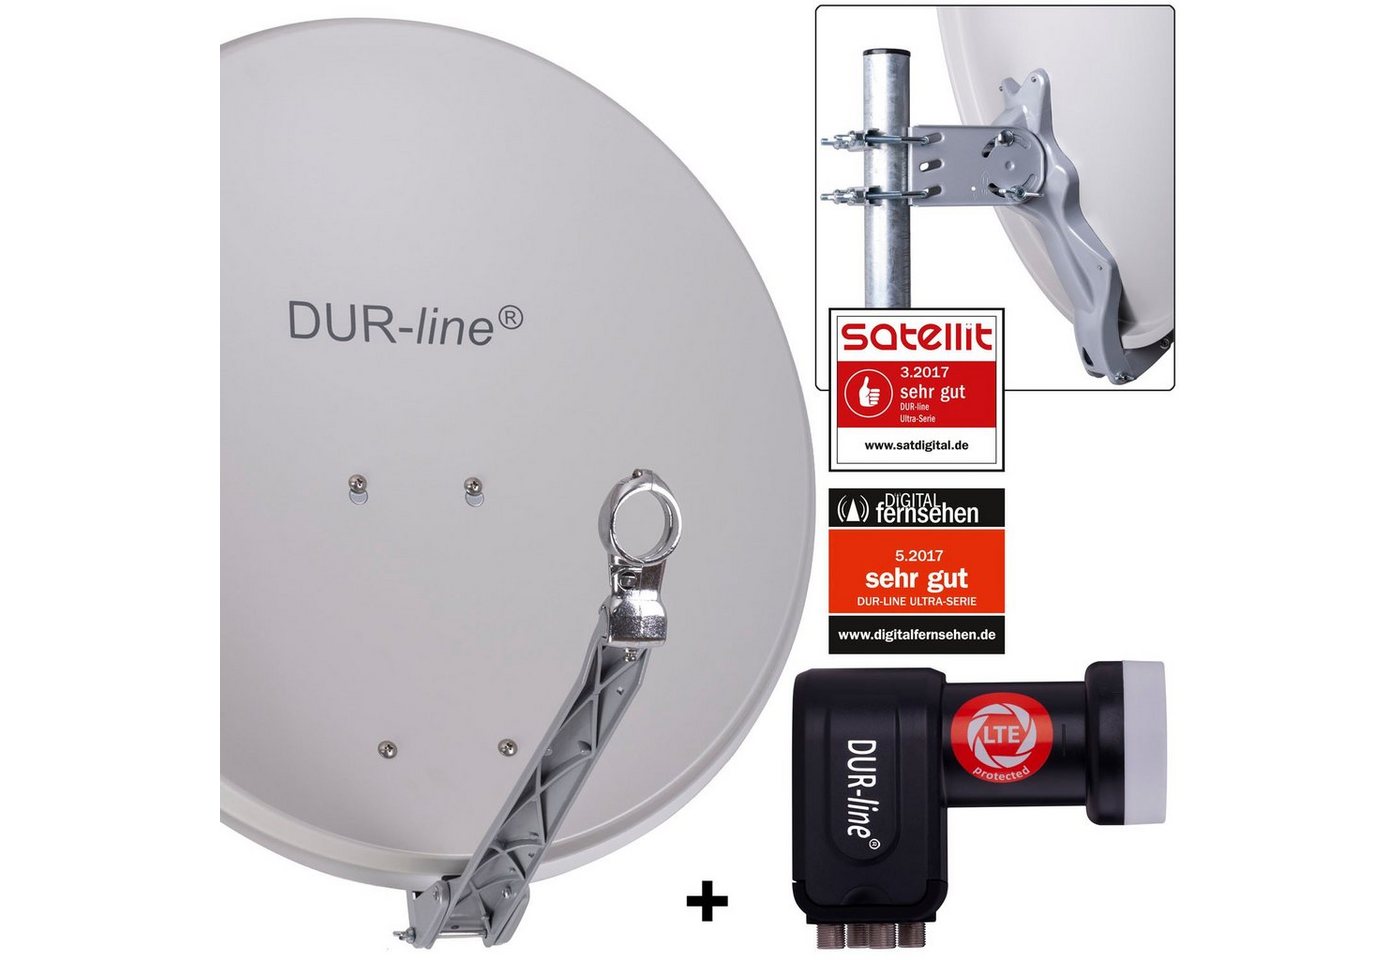 DUR-line DUR-line 4 Teilnehmer Set - Qualitäts-Alu-Satelliten-Komplettanlage - Sat-Spiegel von DUR-line